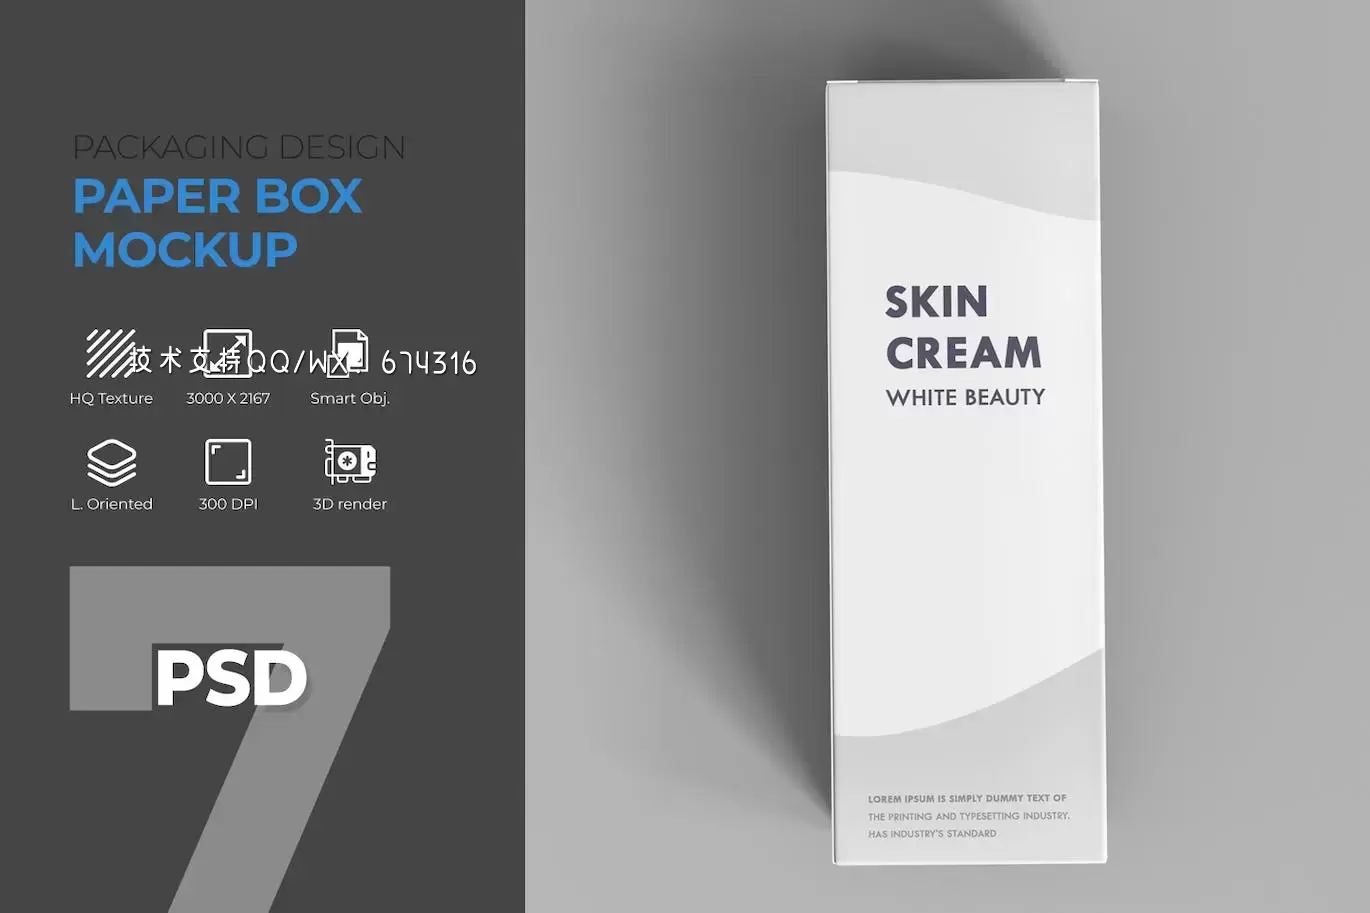 用于美容产品包装的纸盒模型样机 (PSD)免费下载